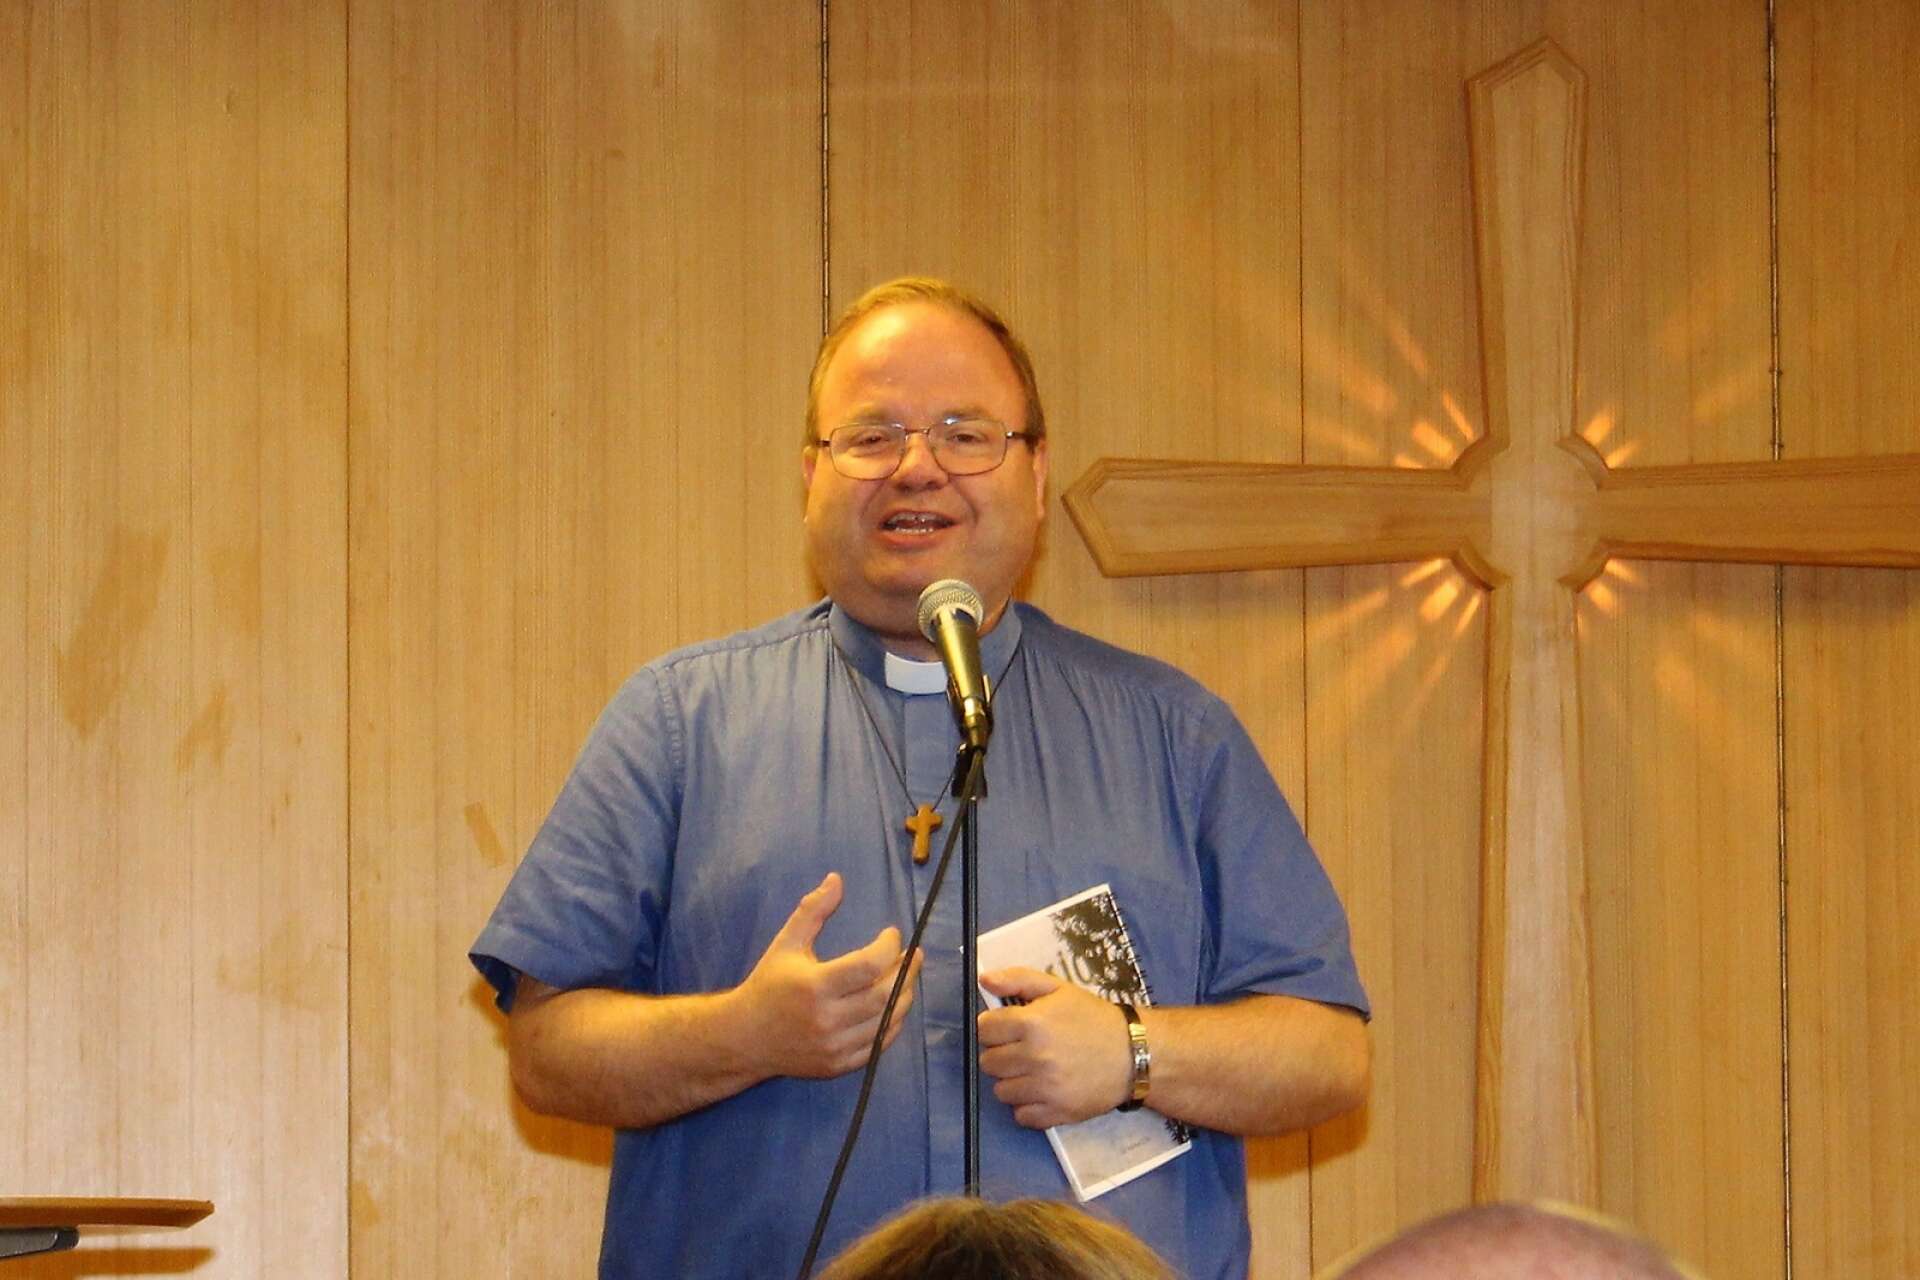 Norgebördige Åge Eriksen är pastor i Equmeniakyrkan i Bengtsfors och framförde hälsning från samma kyrka i Dals Ed och passade även på att göra lite jämförelser mellan norskt och svenskt. 